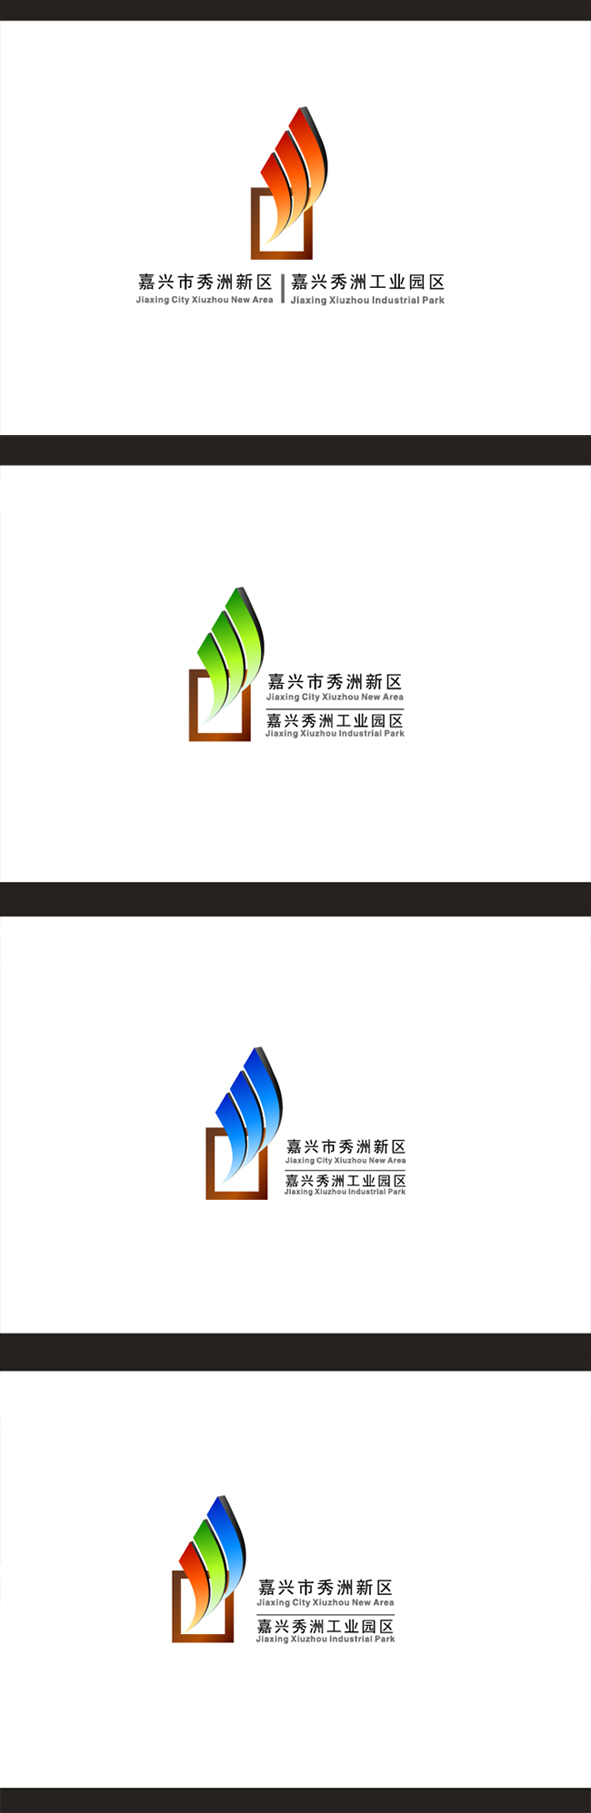 嘉兴市秀洲新区秀洲工业园区logo设计